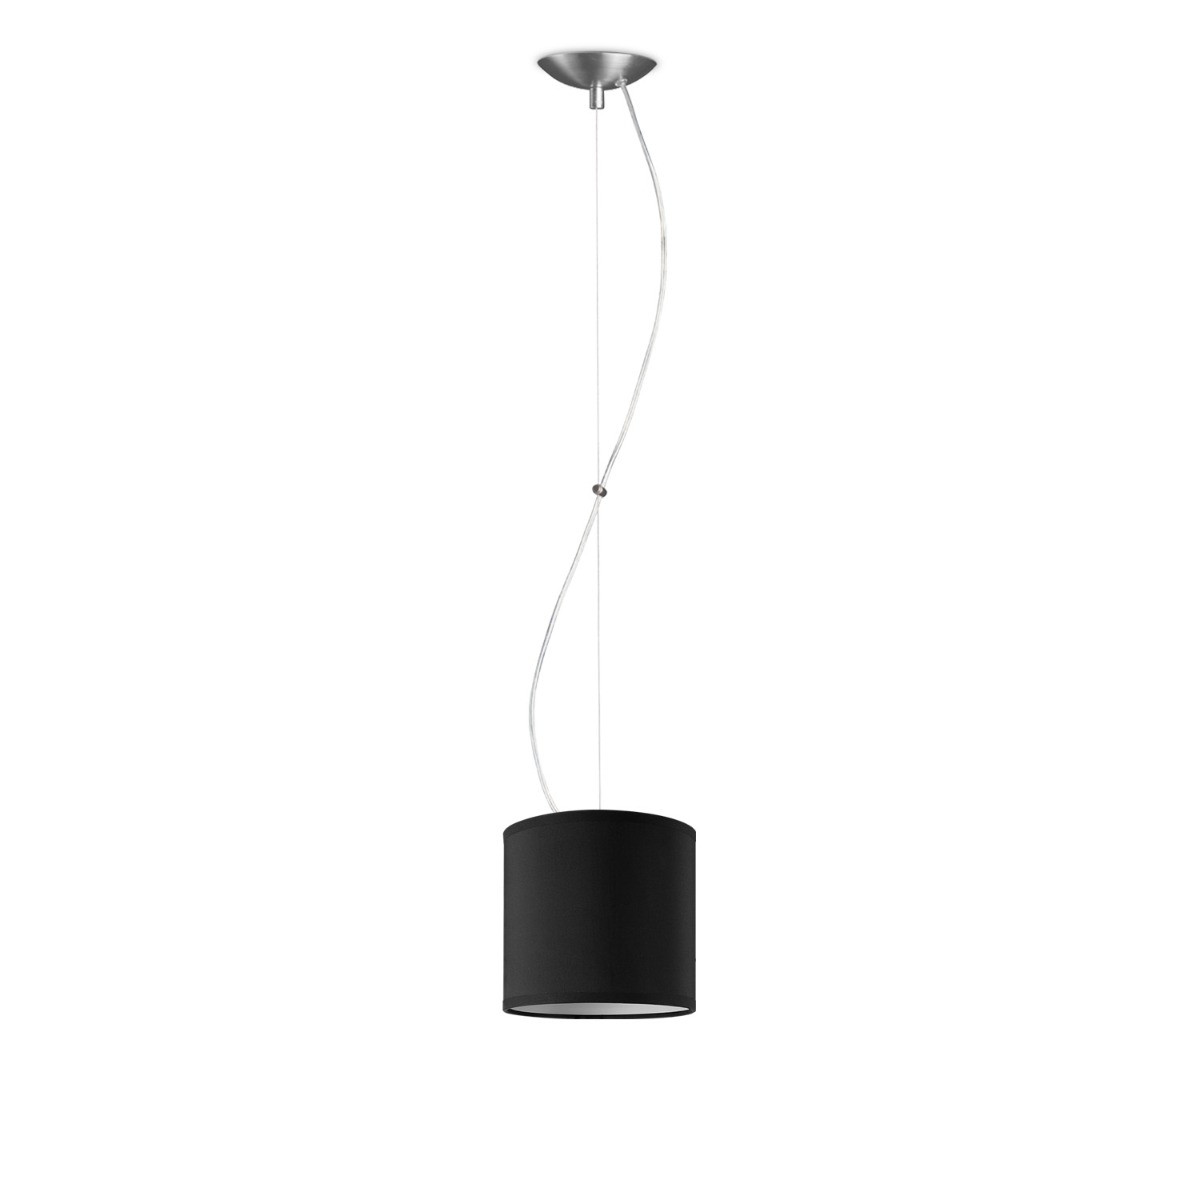 Light depot - hanglamp basic deluxe bling Ø 16 cm - zwart - Outlet